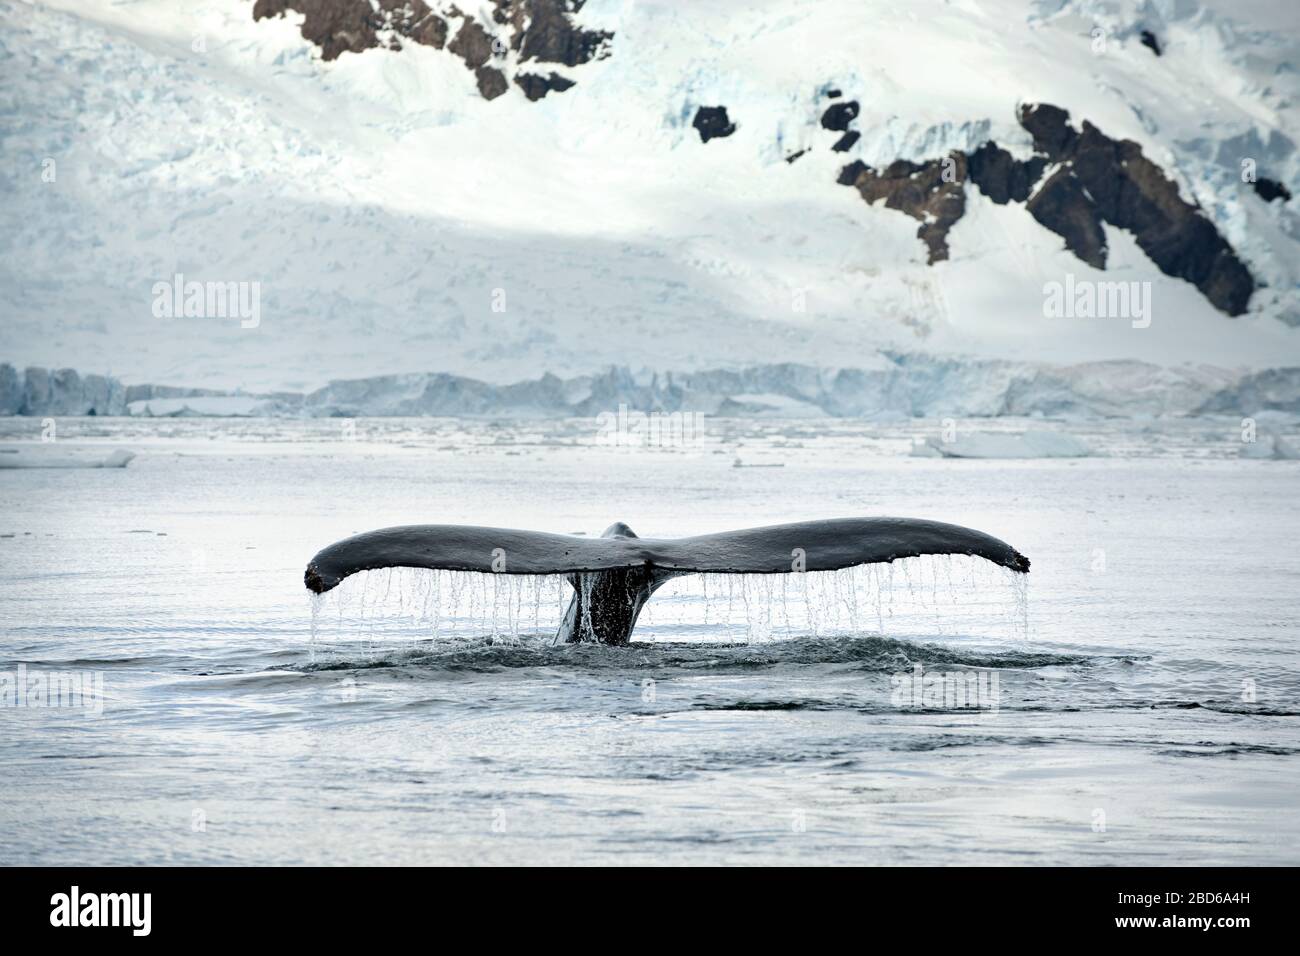 Dal mare emerge una coda appartenente ad una balena. Foto Stock